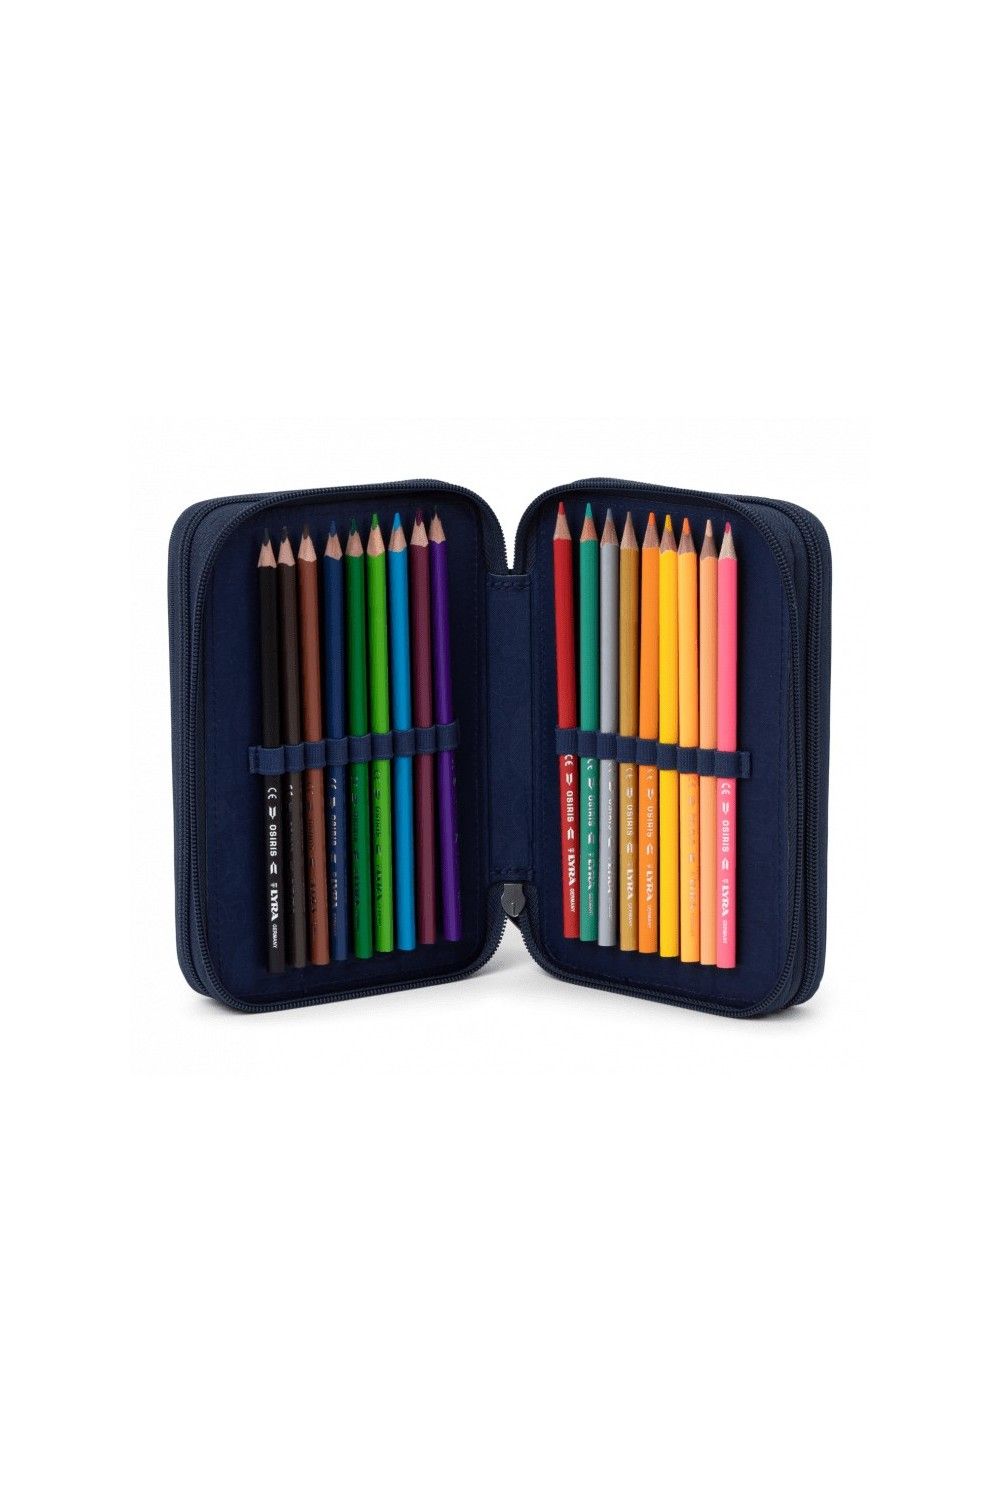 Ergobag maxi pencil case TruckBär